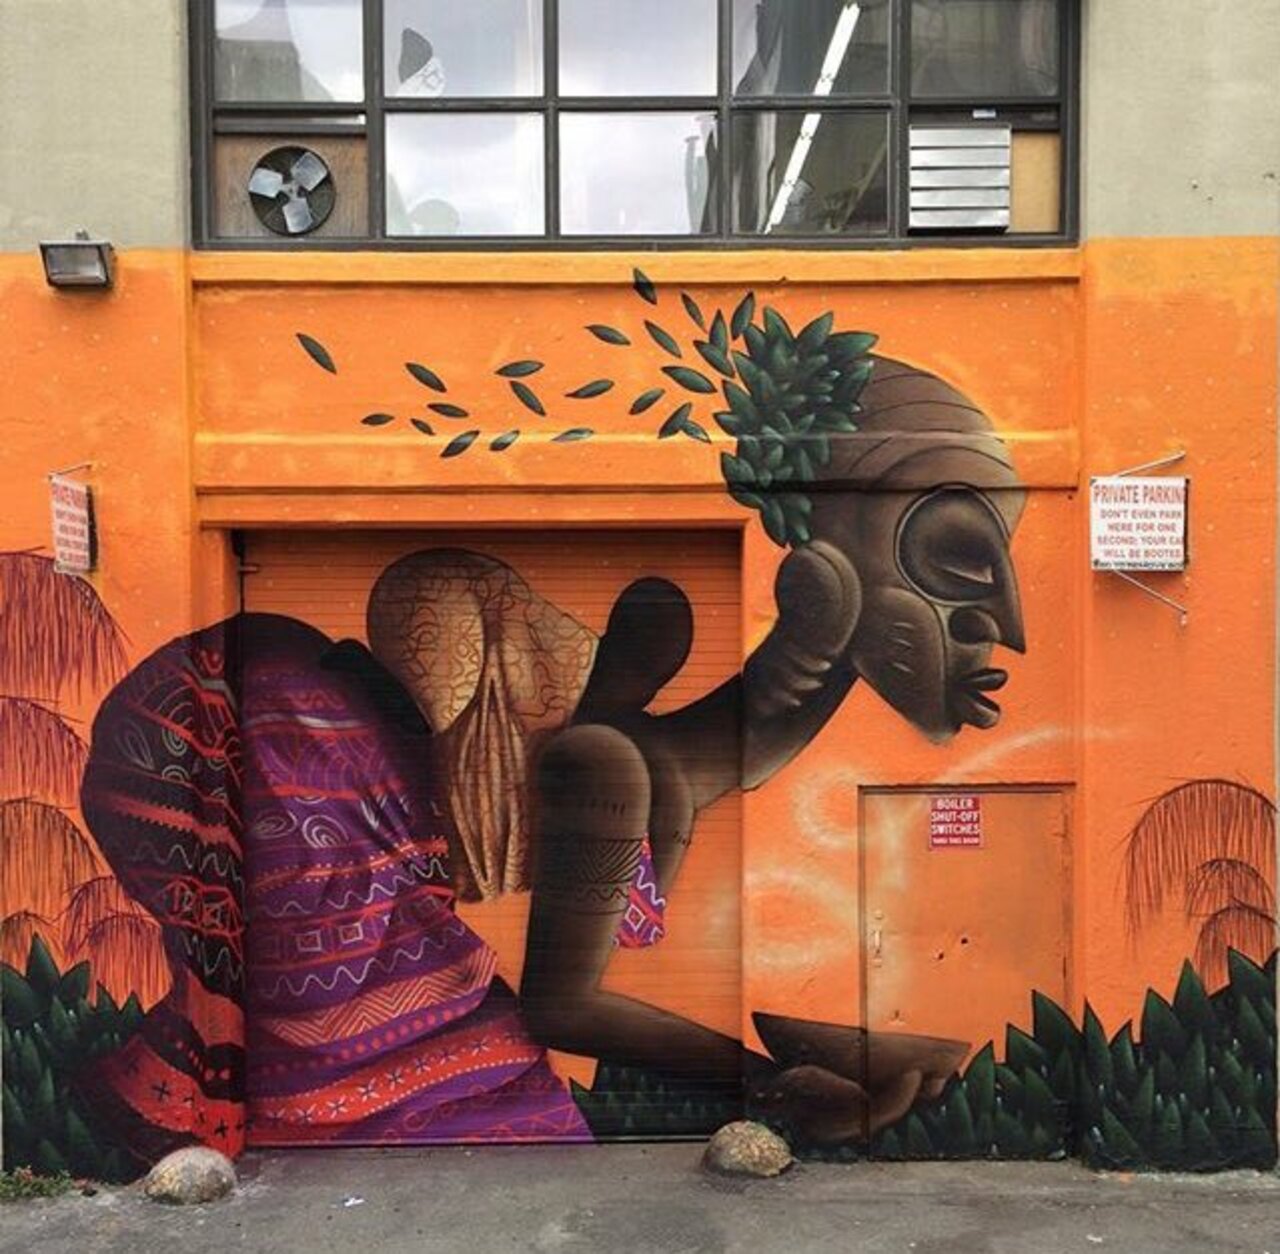 New Street Art by Alexandre Keto in NYC 

#art #graffiti #mural #streetart https://t.co/8utusn3Duc